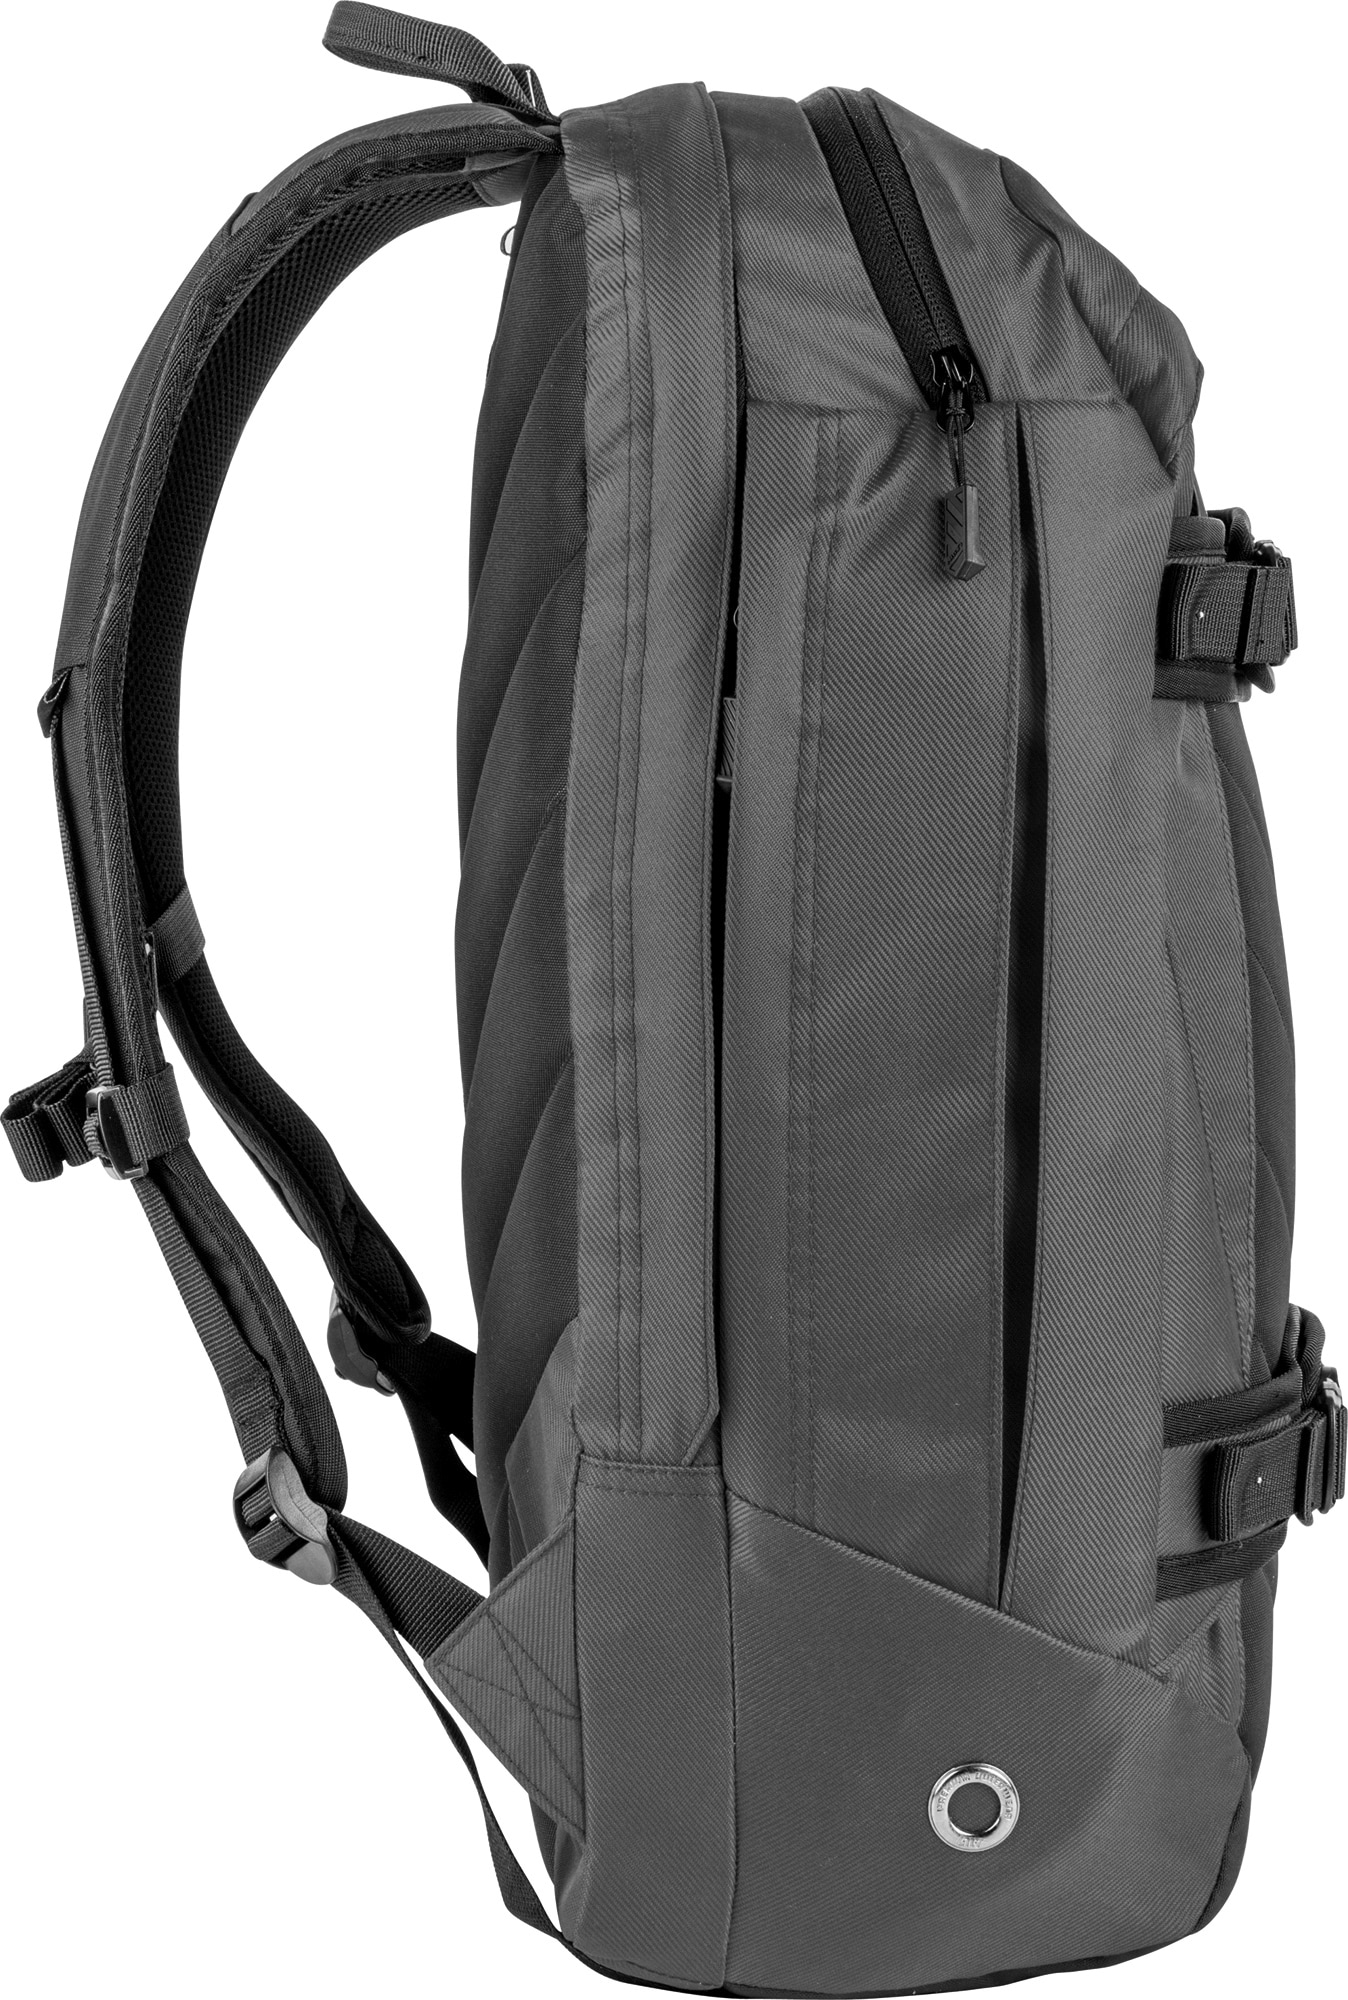 NITRO Laptoprucksack »Aerial«, Schulrucksack, Daypack, Schoolbag, Sportrucksack